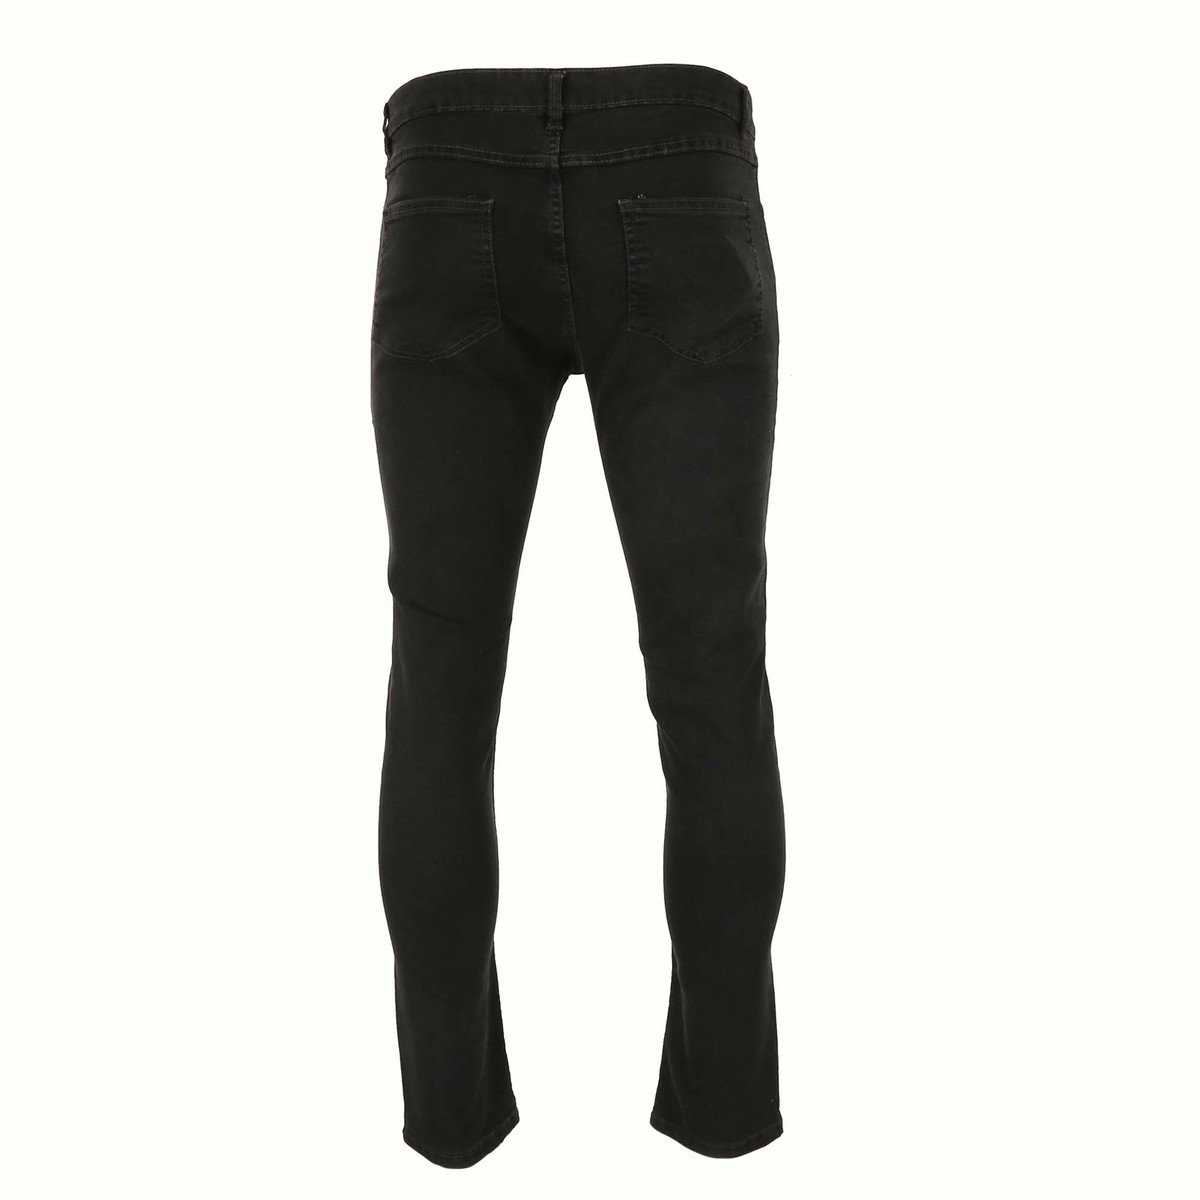 Reo Men's Denim Slim Fit Jeans BOM570C, DK.GREY 30